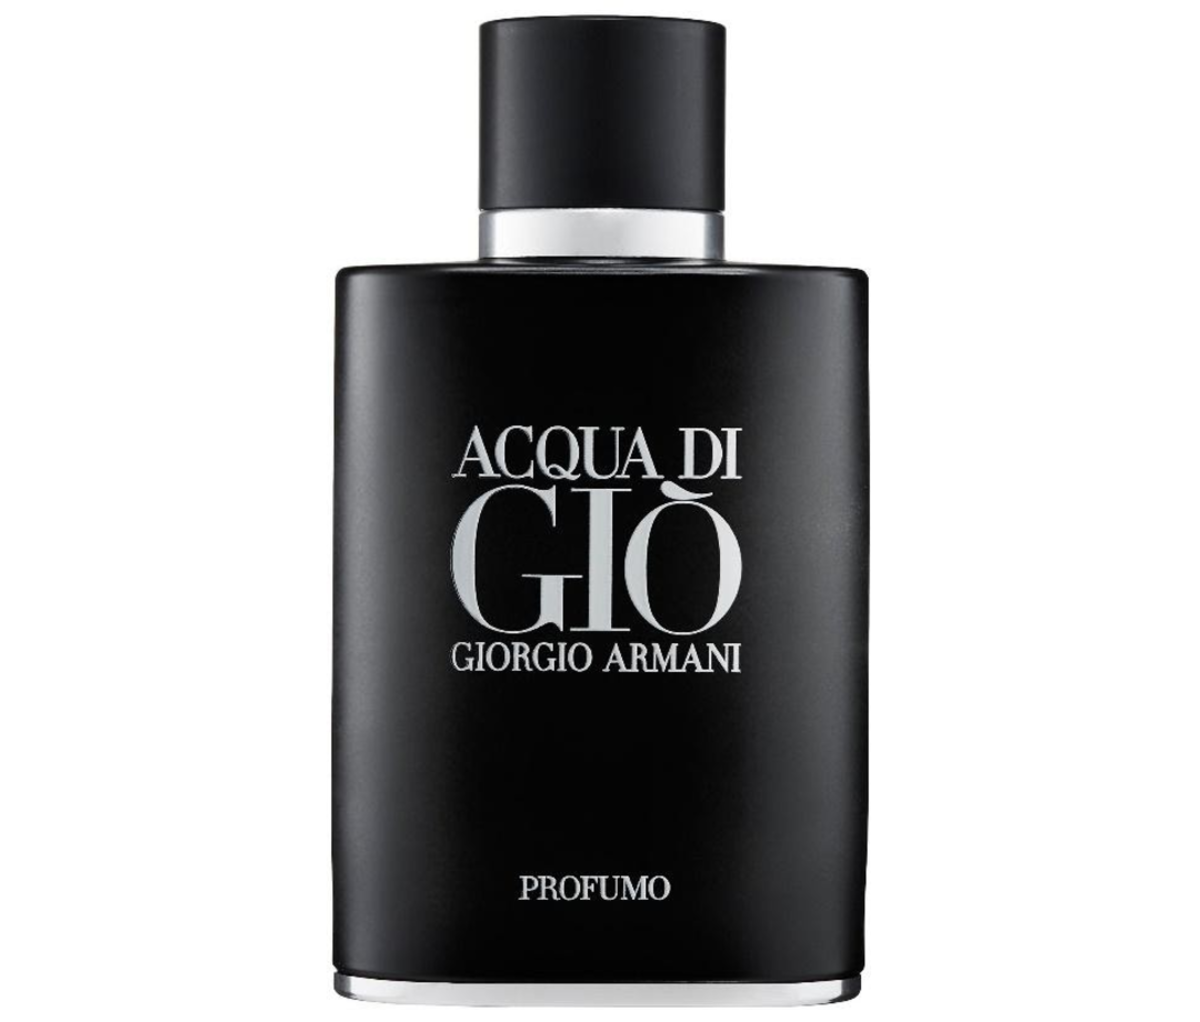 Acqua di Gio Profumo by Giorgio Armani